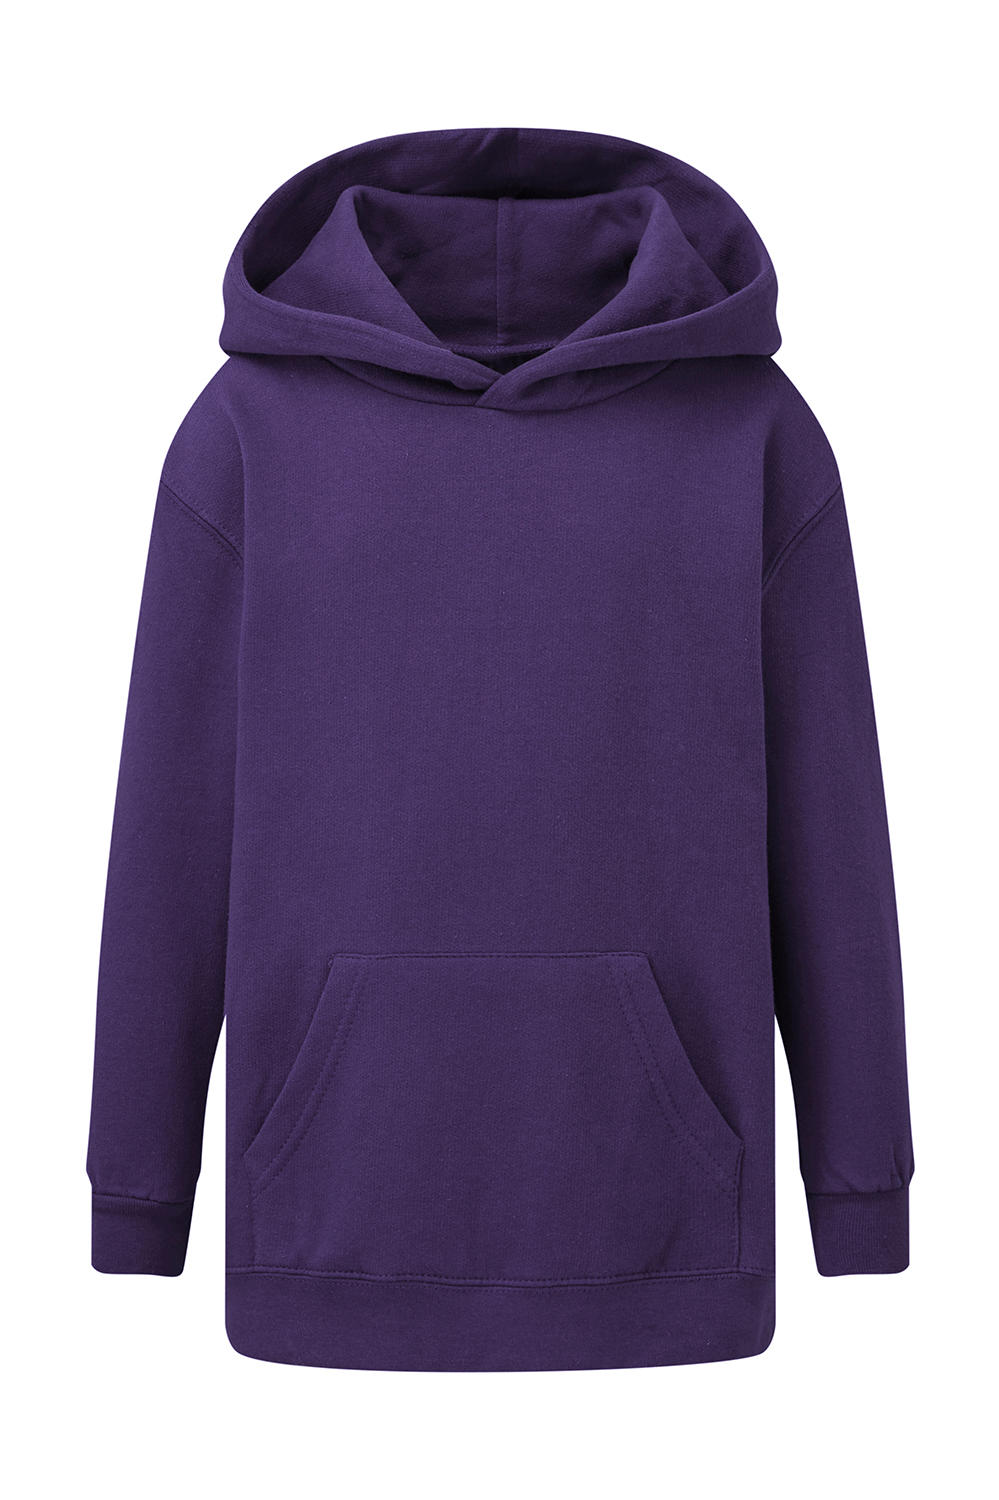  Kids Hooded Sweatshirt in Farbe Purple